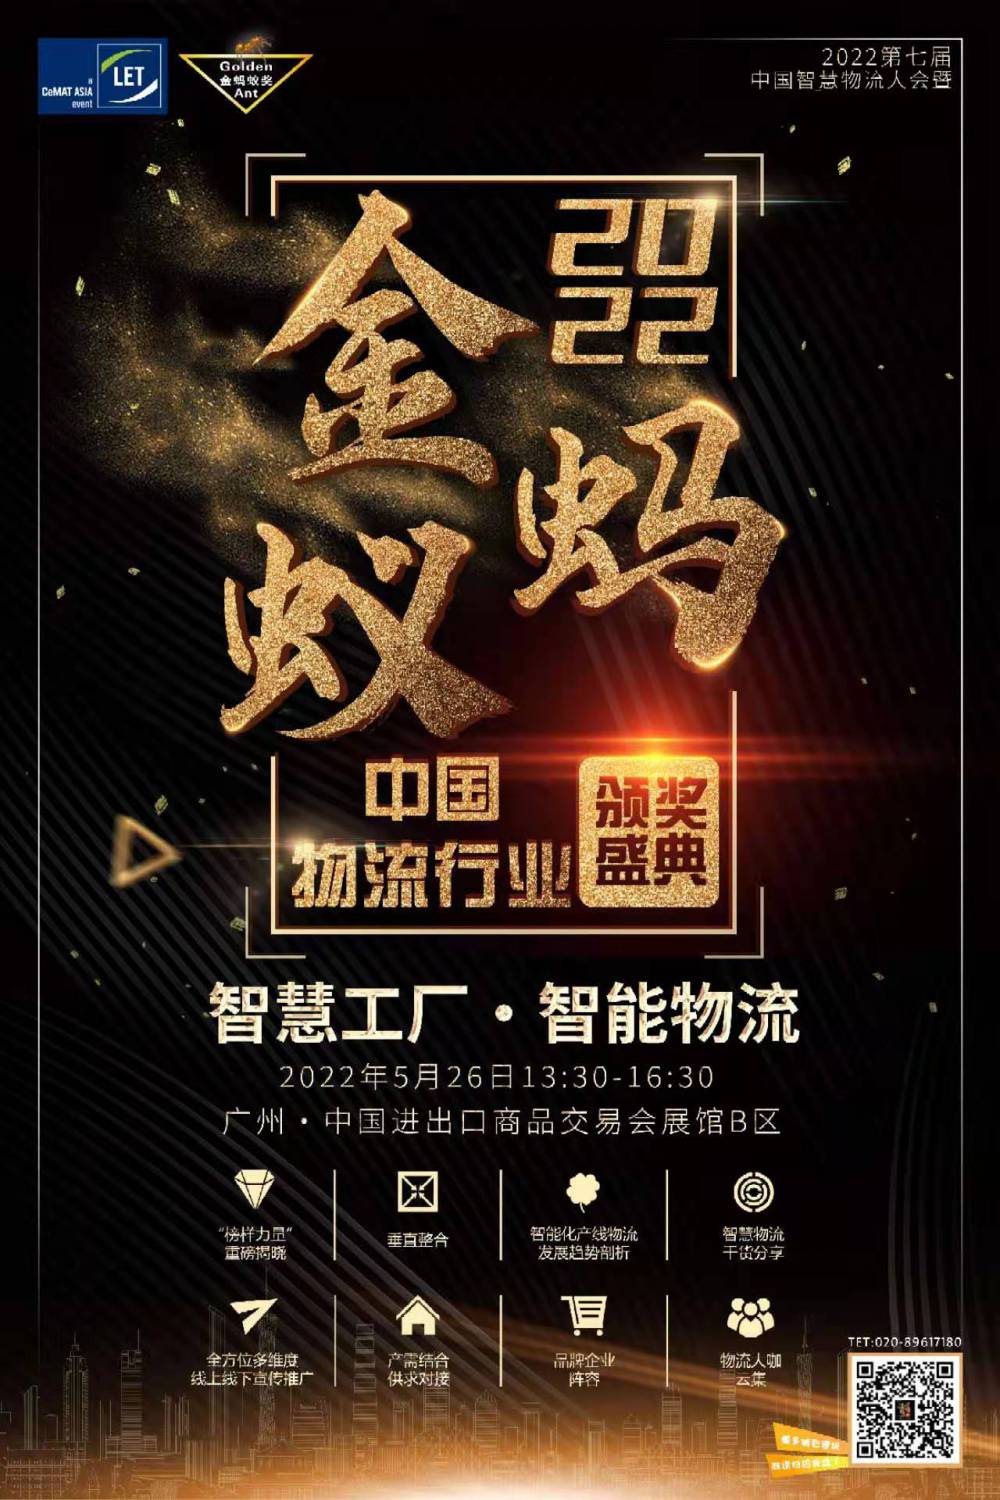 2022第七届中国智慧物流大会暨中国物流行业金蚂蚁颁奖盛典